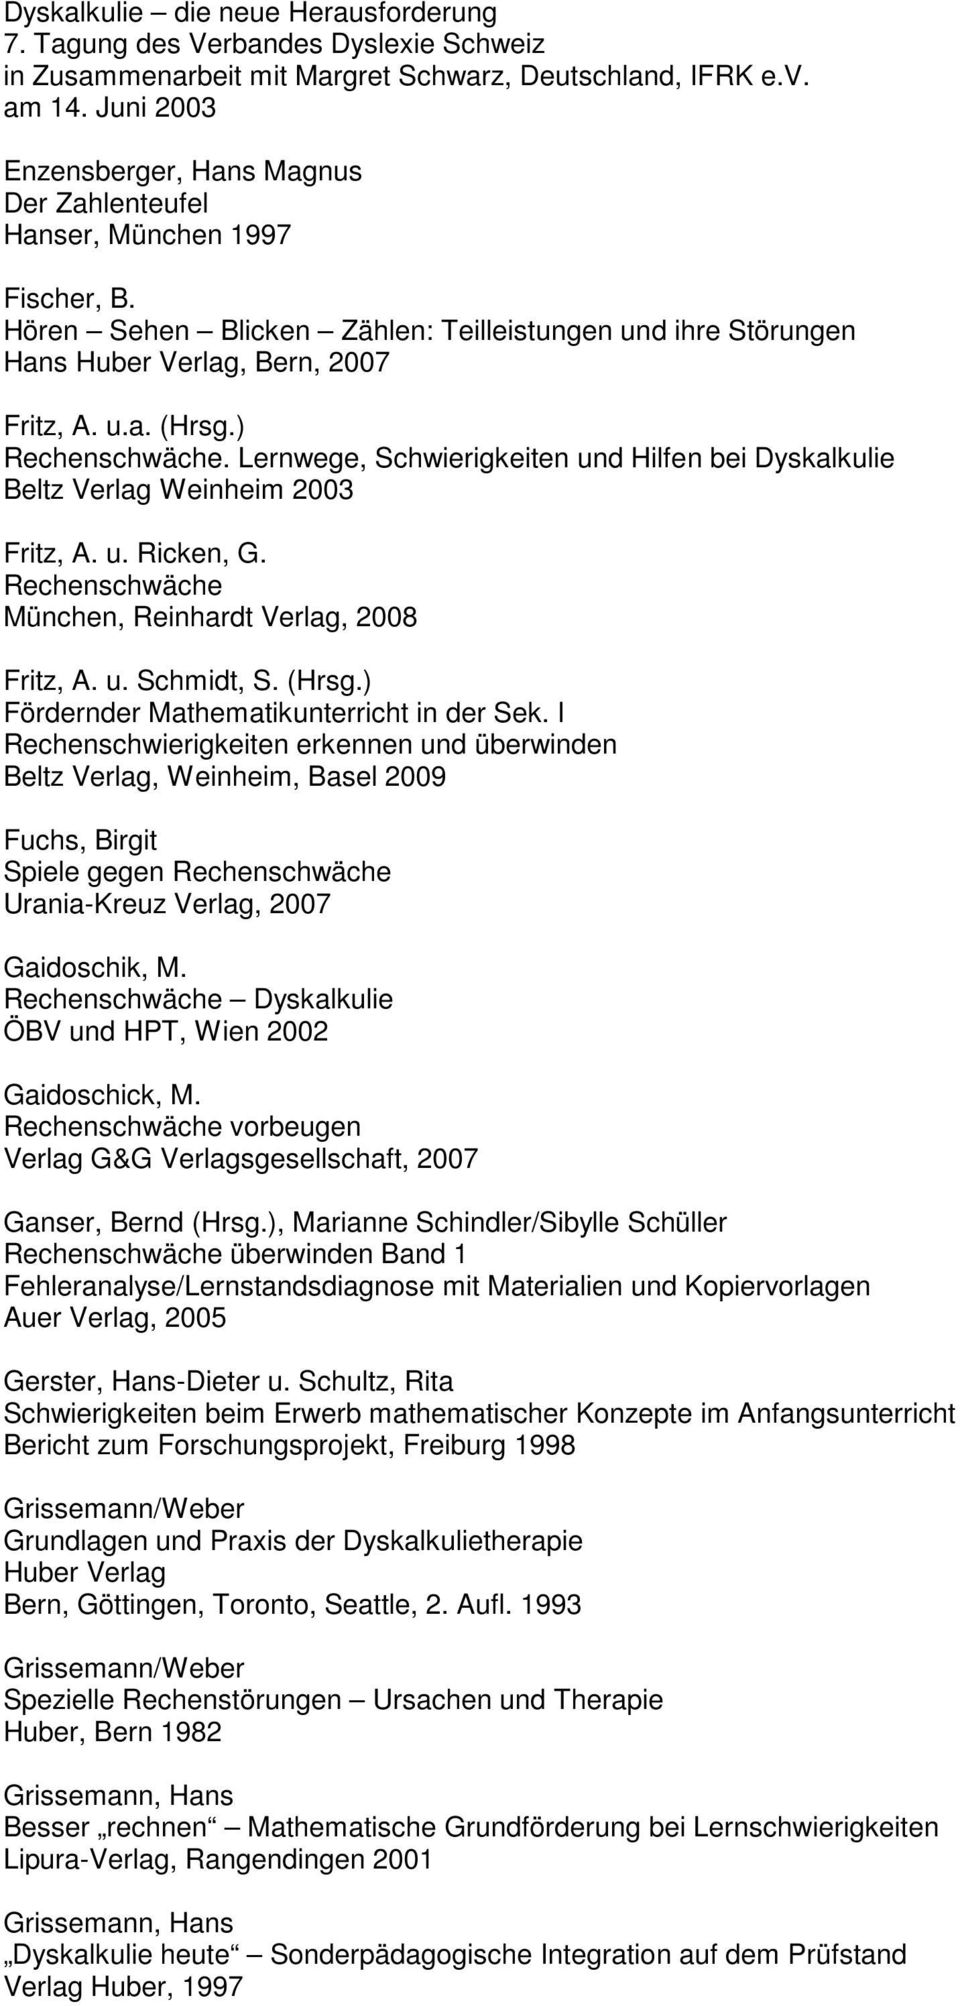 ) Rechenschwäche. Lernwege, Schwierigkeiten und Hilfen bei Dyskalkulie Beltz Verlag Weinheim 2003 Fritz, A. u. Ricken, G. Rechenschwäche München, Reinhardt Verlag, 2008 Fritz, A. u. Schmidt, S. (Hrsg.